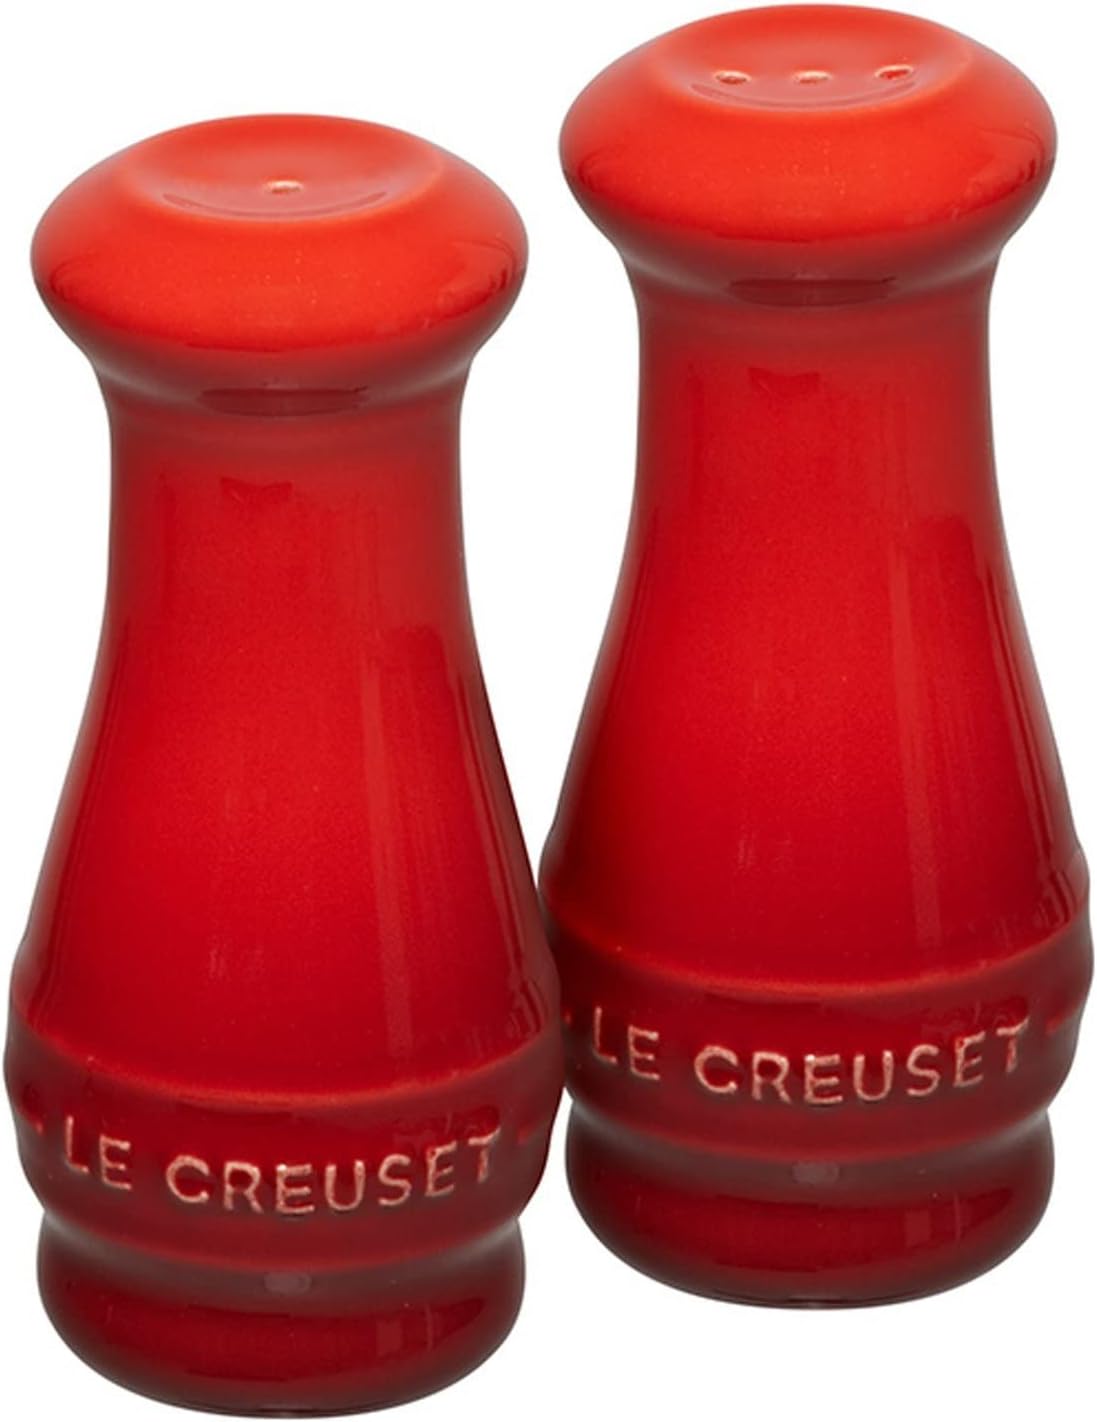 Le Creuset Salt And Pepper Shaker Kit 110 Ml Red